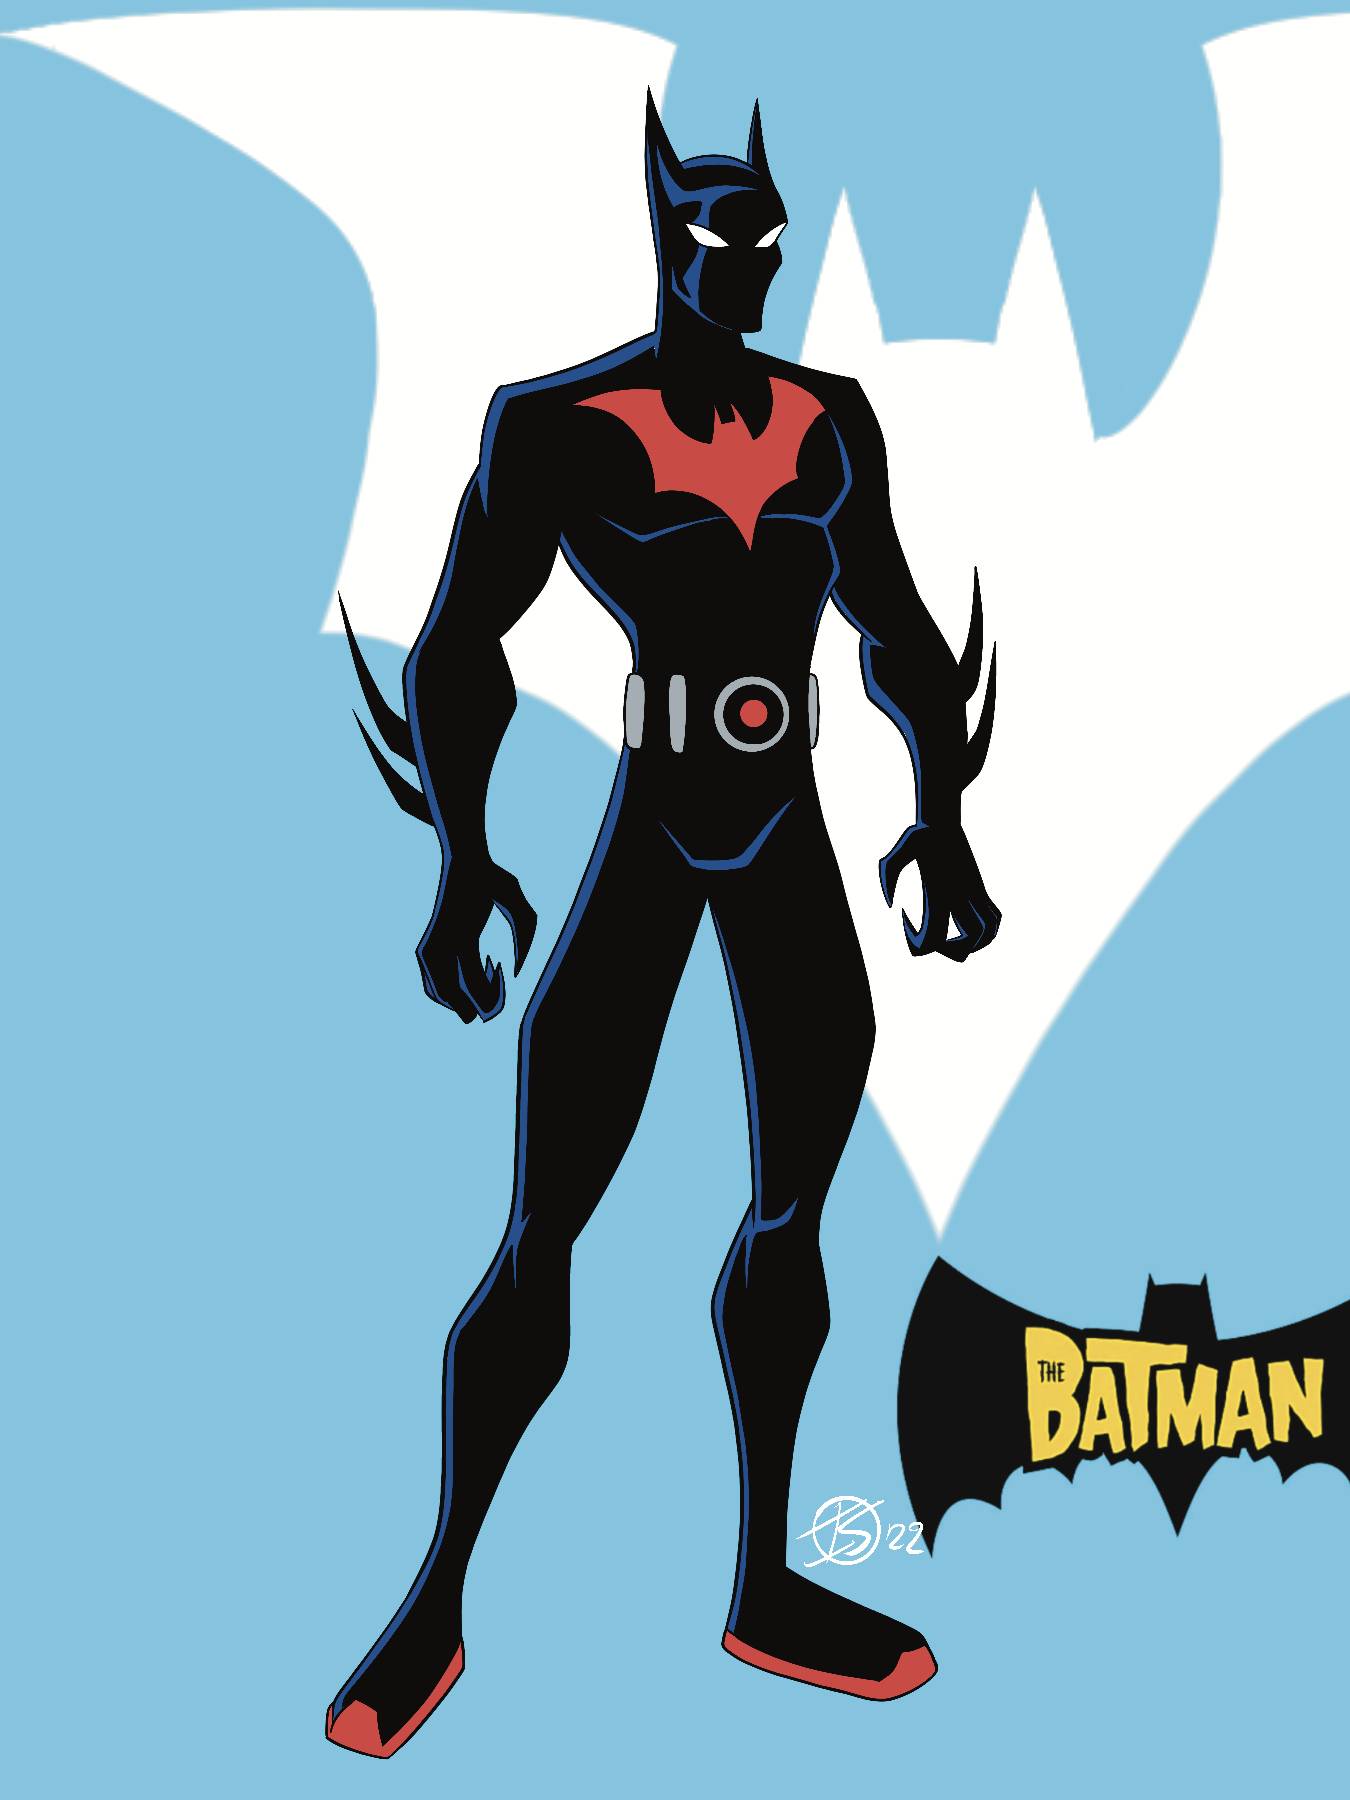 The Batman Beyond by IsaiahSimmonsArtist on DeviantArt